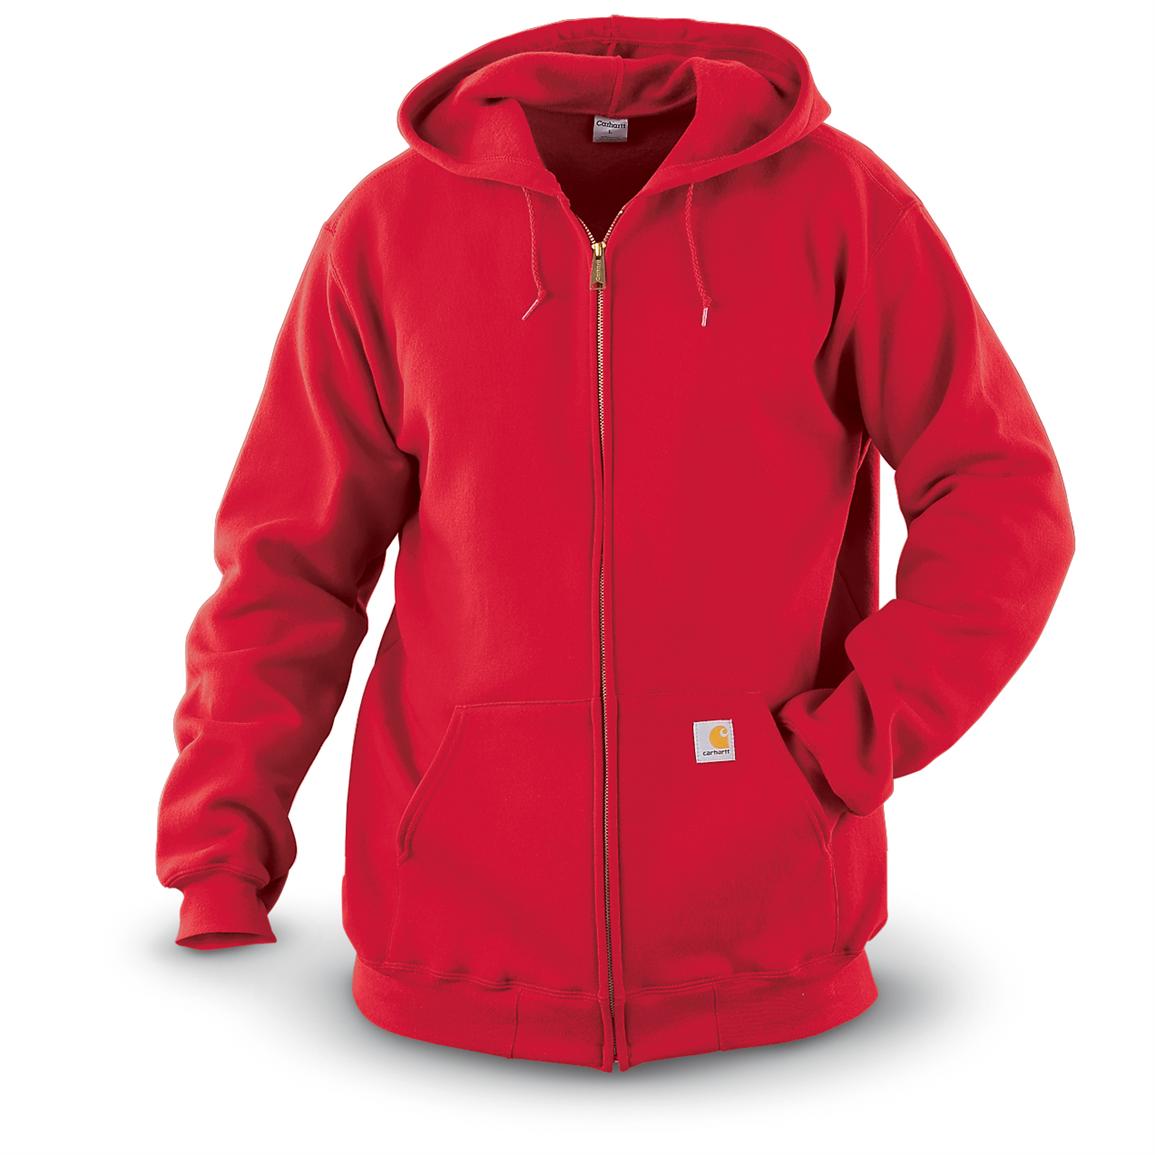 CarharttÂ® Midweight Full - zip Sweatshirt, Red - 173545, Sweatshirts & Hoodies at Sportsman's Guide